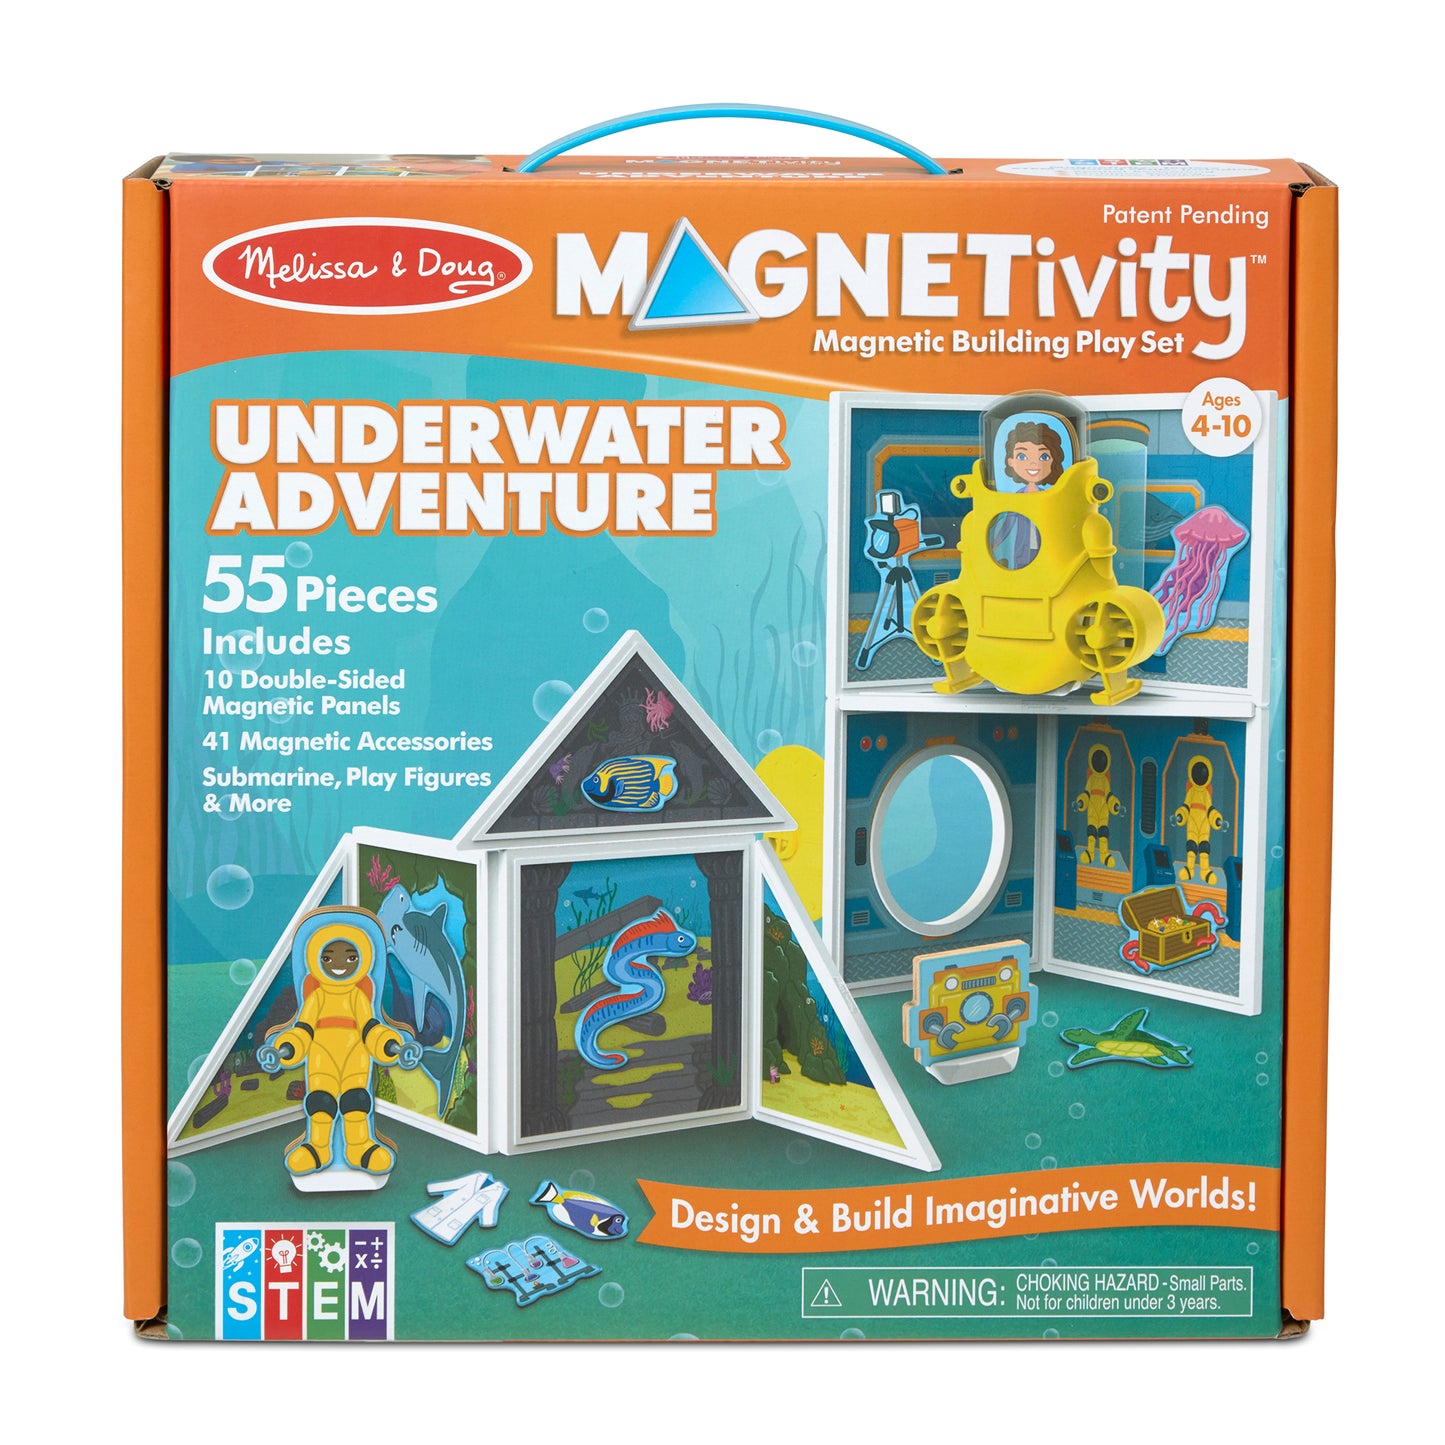 Magnetivity Underwater Adventure